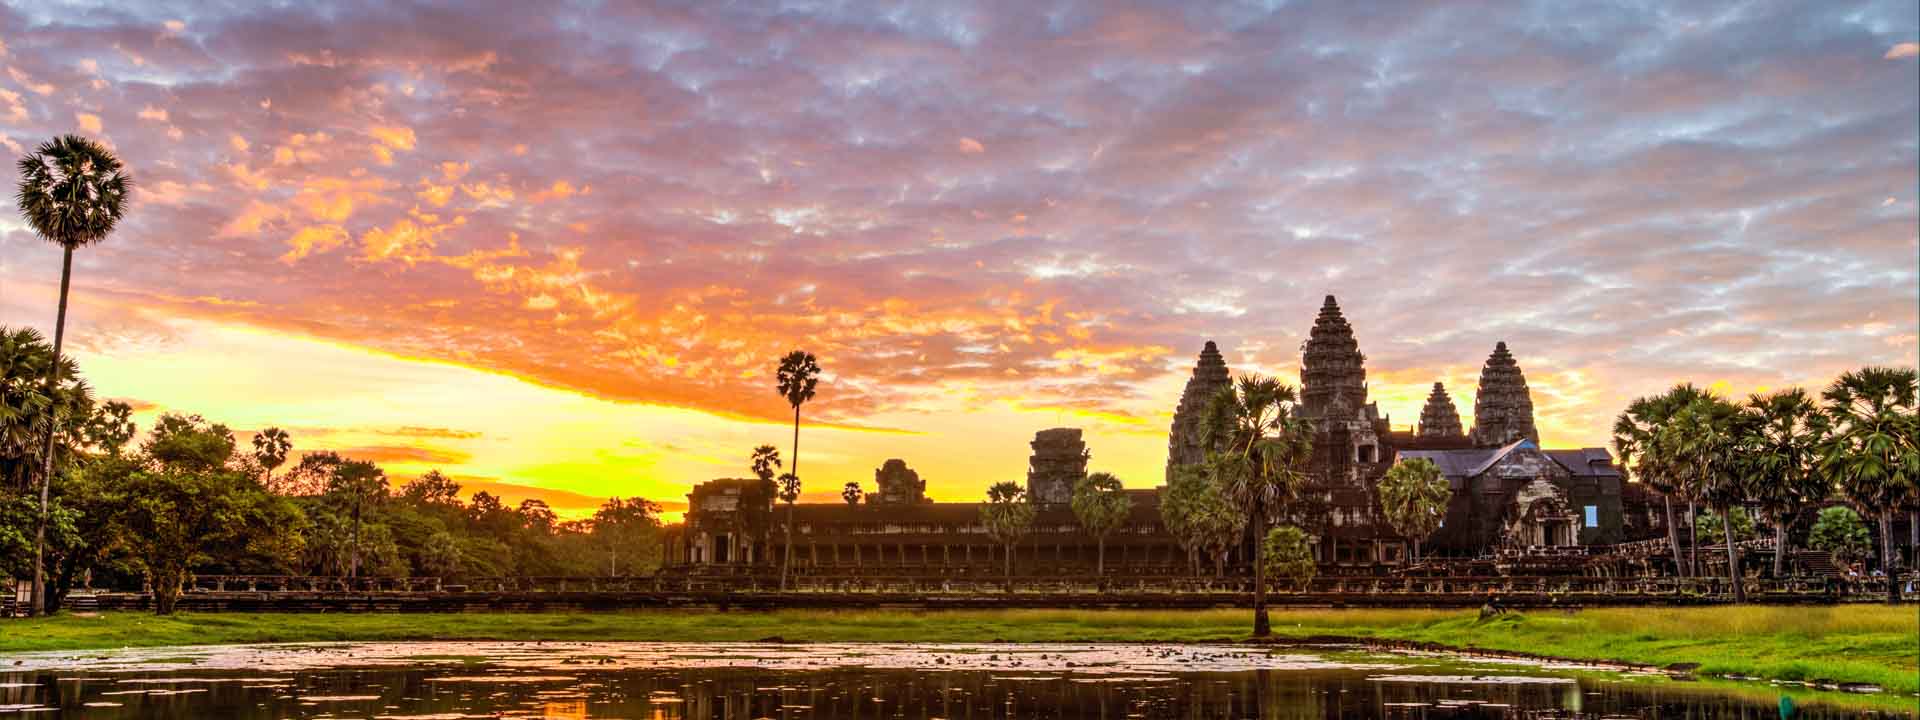 Templos de angkor y el lago tonle sap 4 días